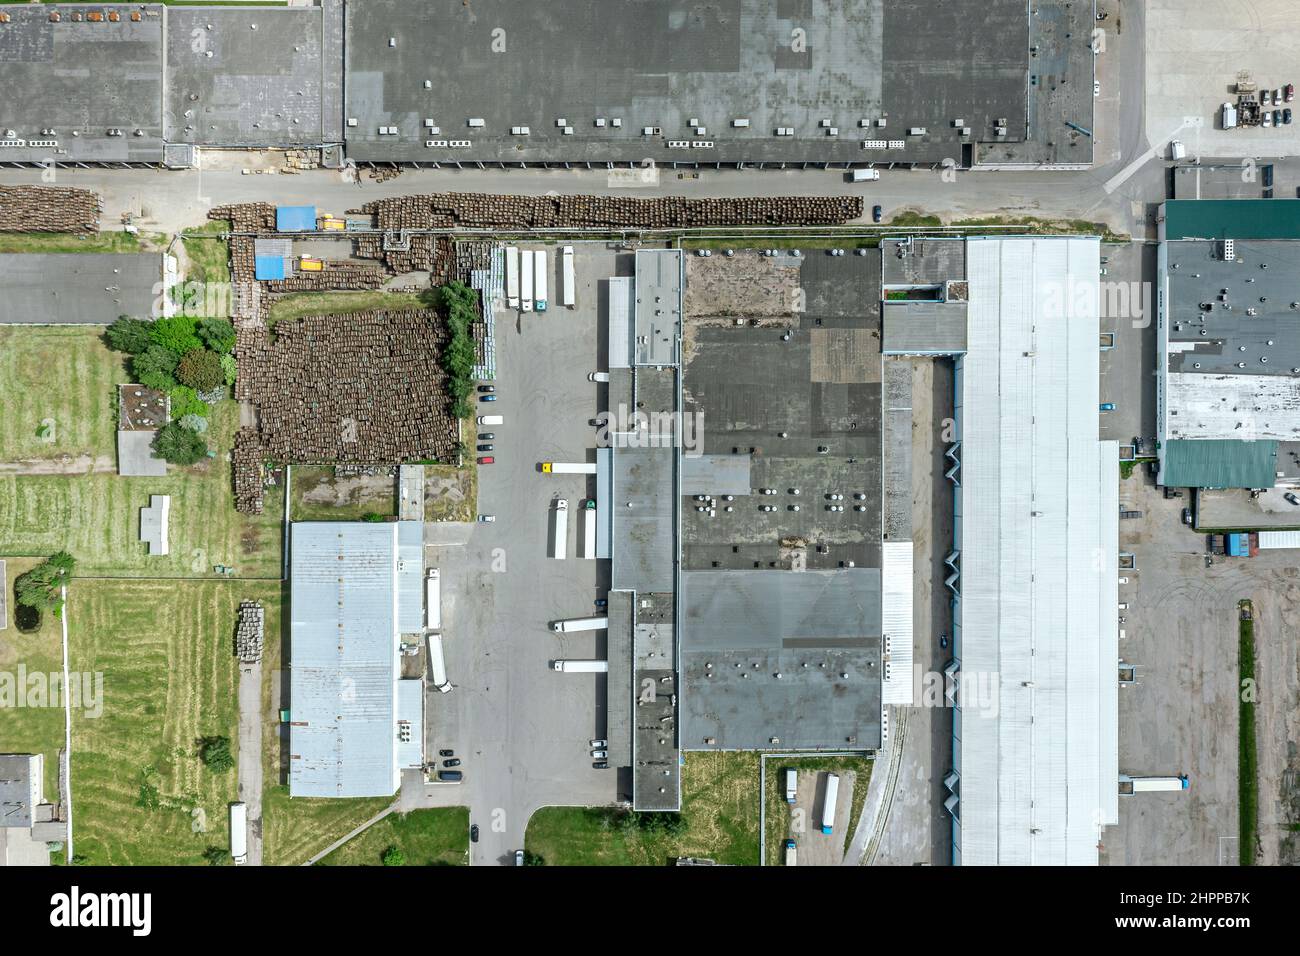 vue aérienne de l'entrepôt de marchandises. centre logistique dans la zone industrielle de banlieue par dessus. Banque D'Images